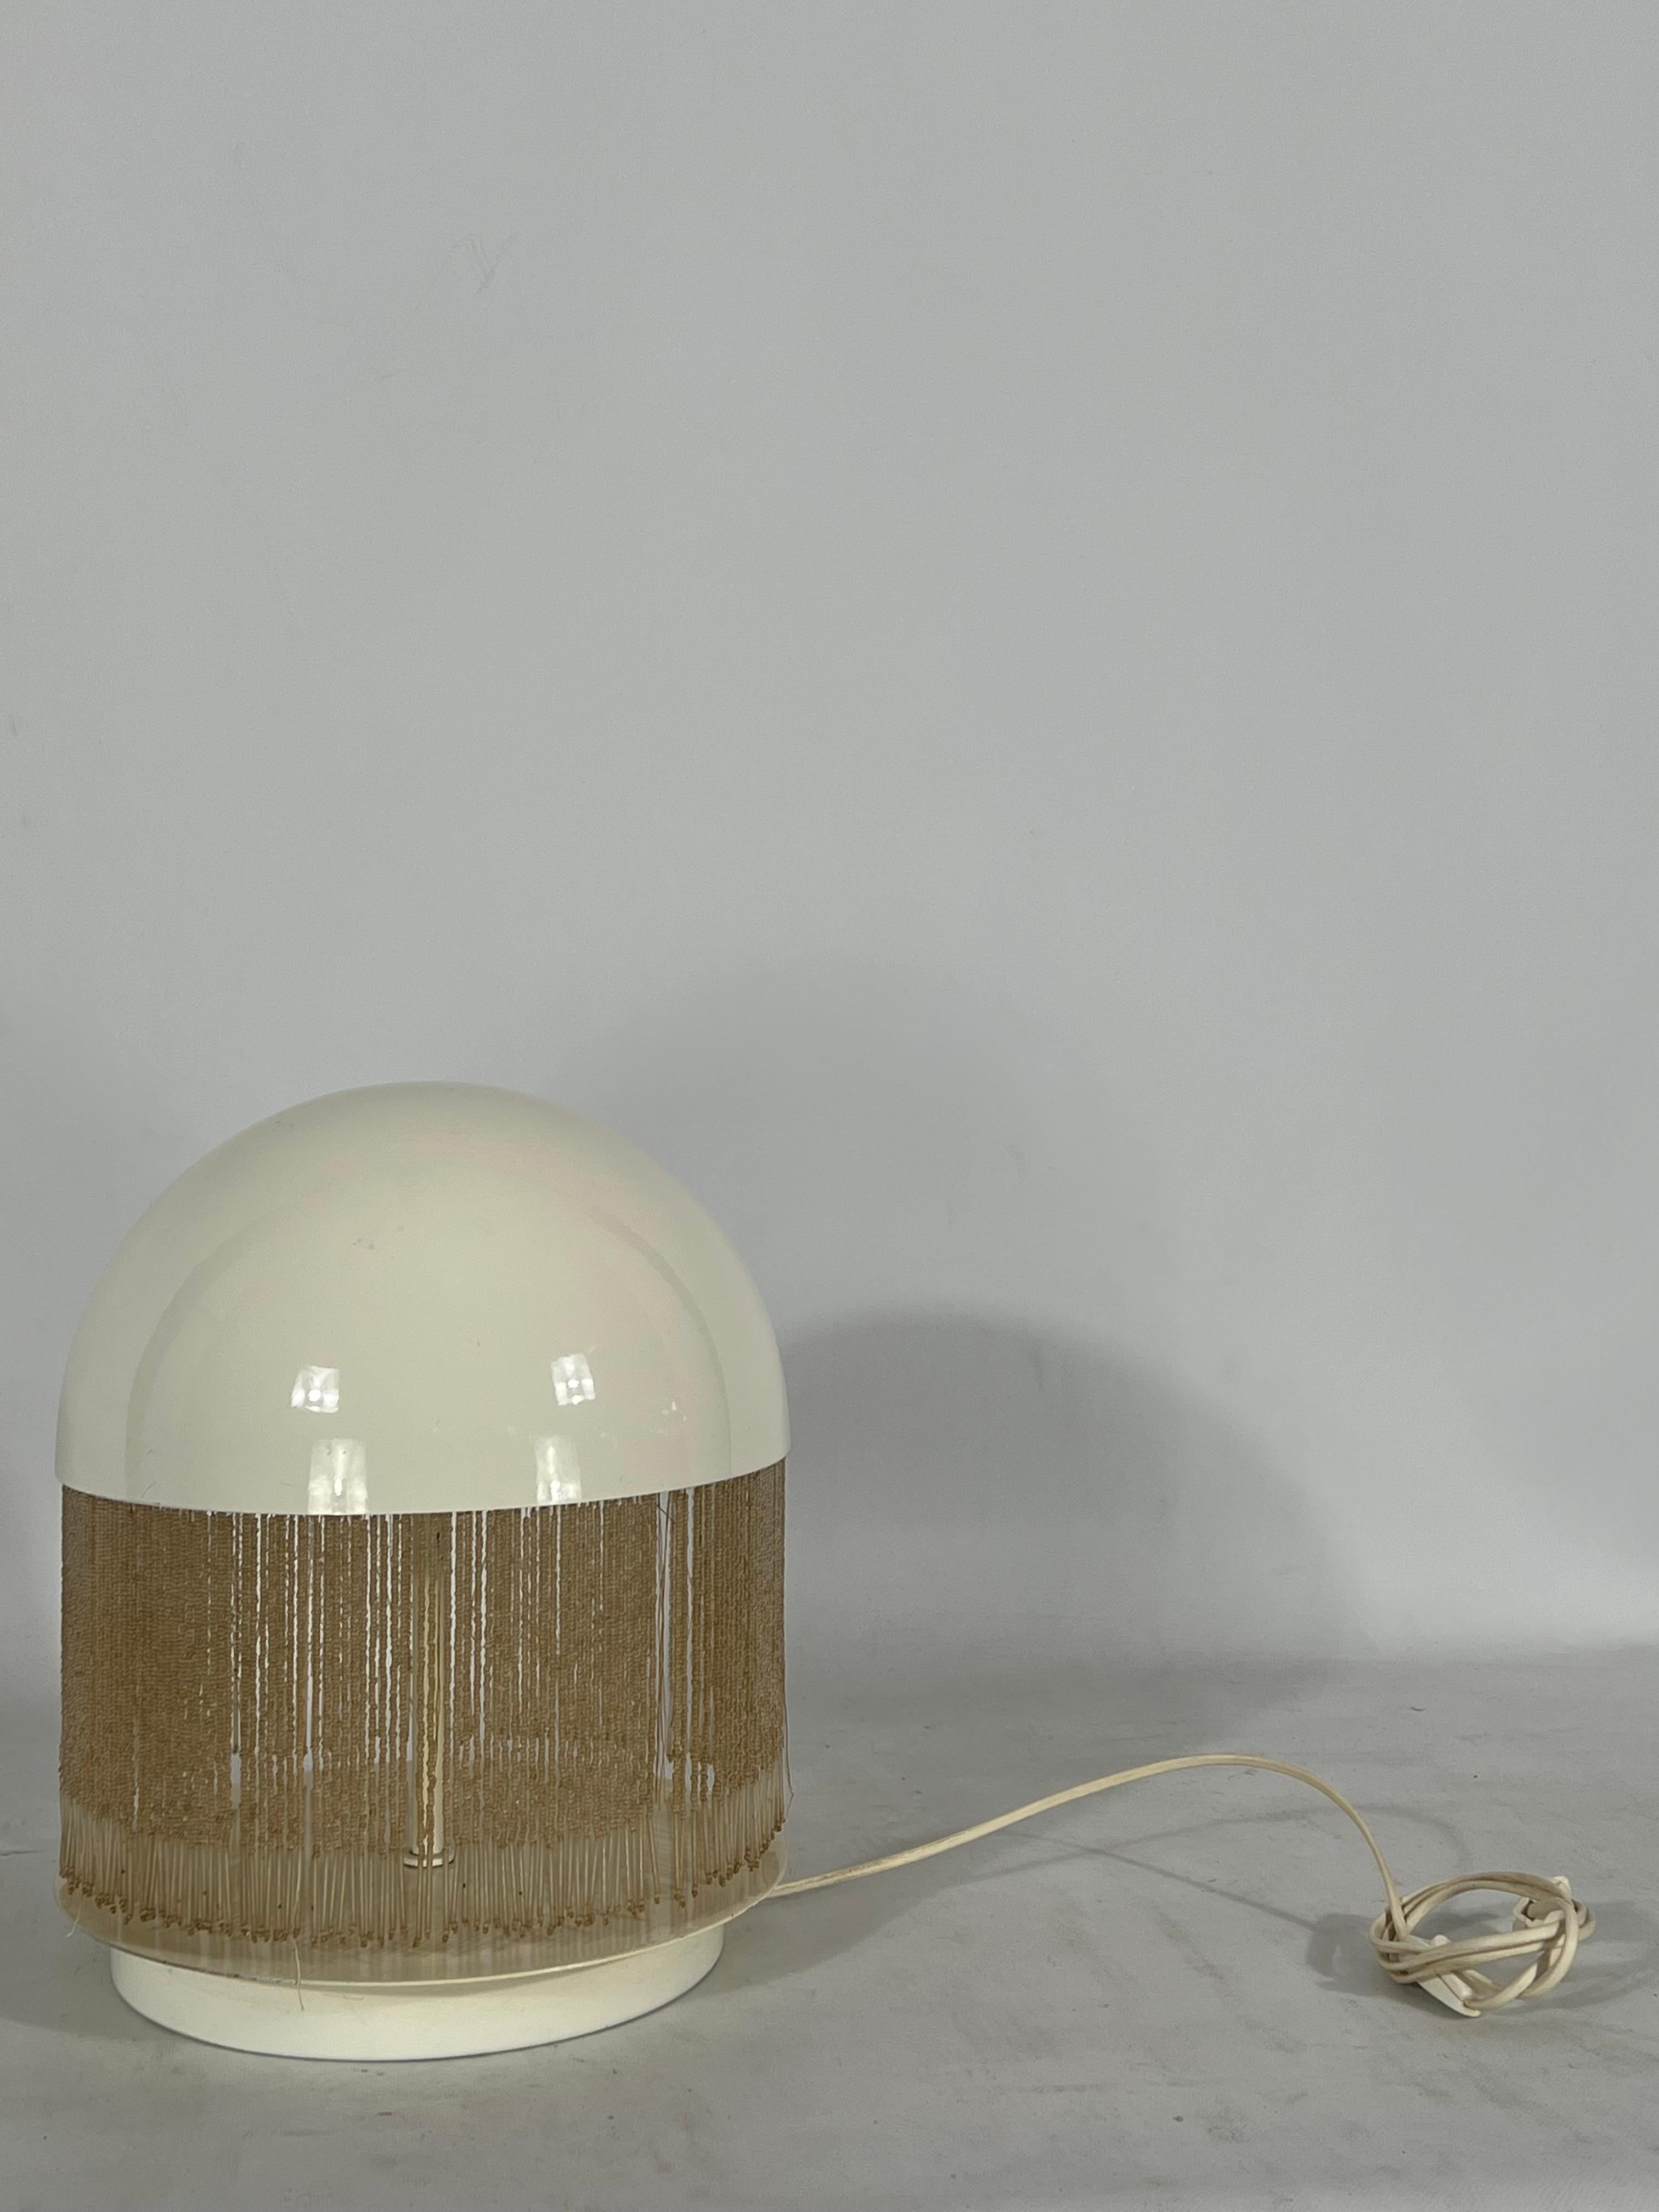 20th Century Rare Italian Modern Otero Table Lamp by Giuliana Gramigna for Quattrifolio, 1979 For Sale